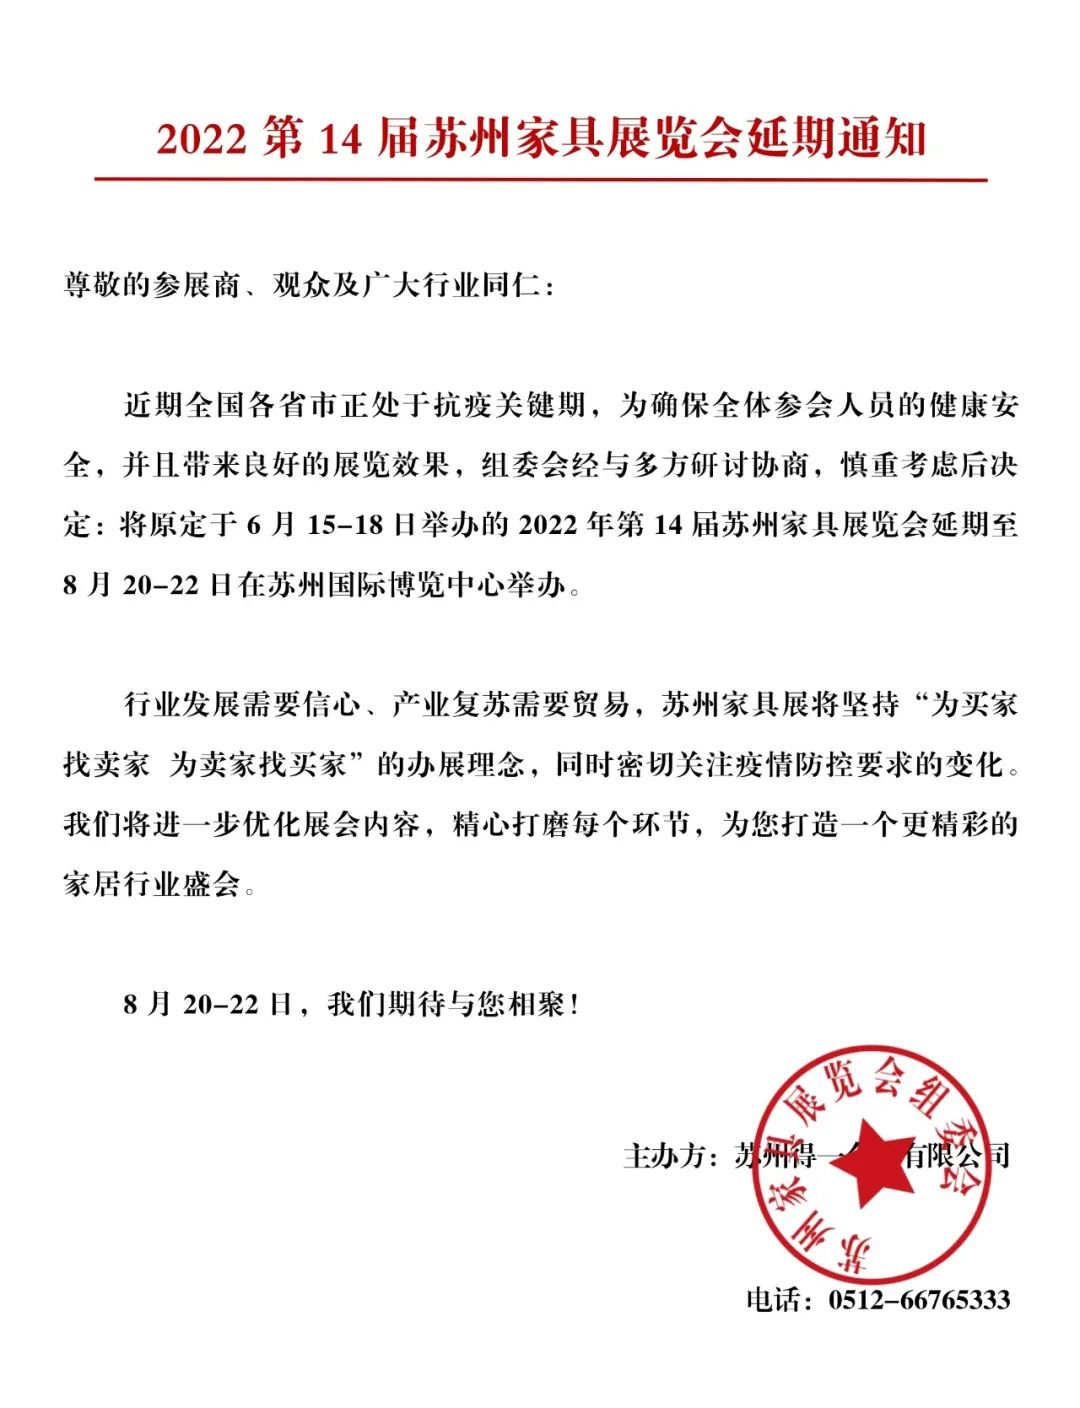 通知：2022第14届苏州家具展览会延期至8月20-22日